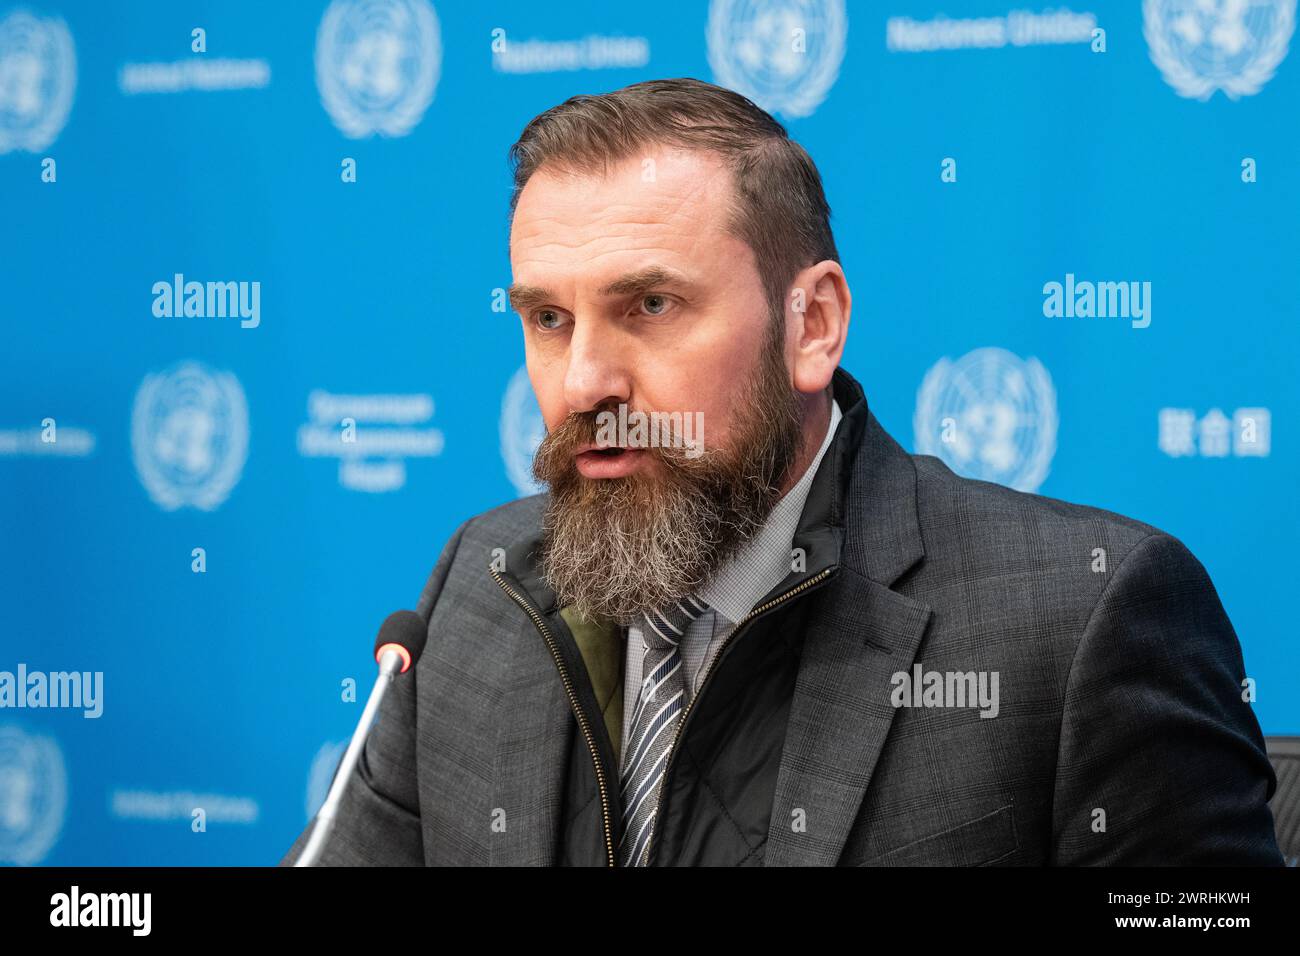 Oksen Lisovyi, ministro dell'istruzione e della scienza dell'Ucraina, parla al briefing stampa sull'istruzione in Ucraina da parte dell'UNICEF presso la sede delle Nazioni Unite a New York il 12 marzo 2024 Foto Stock